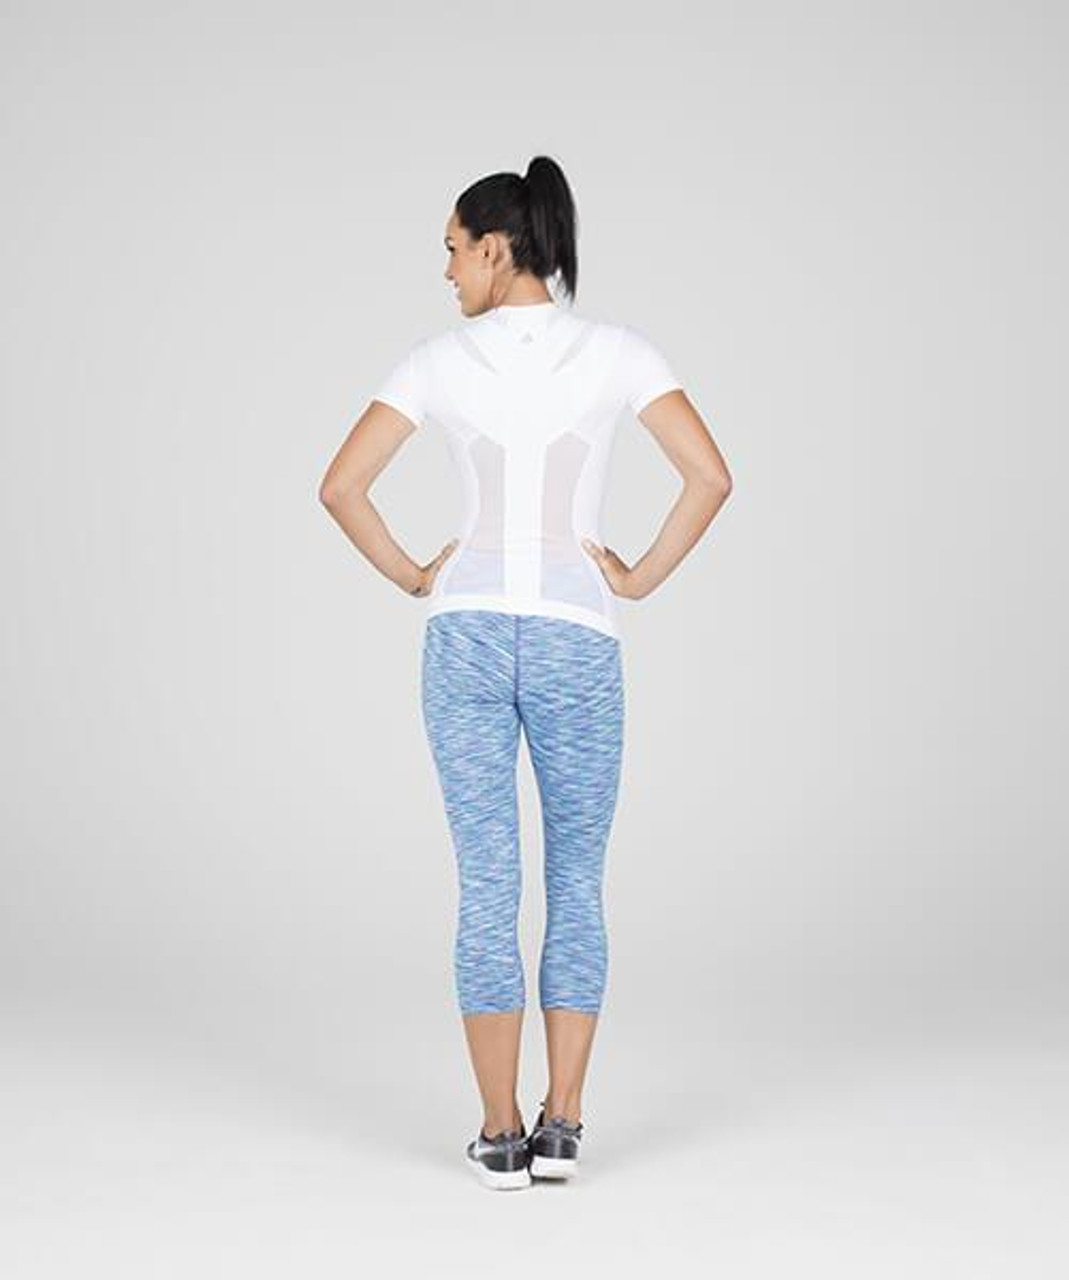 AlignMed Posture Shirt 2.0 Zipper - Women - MedEquip Depot